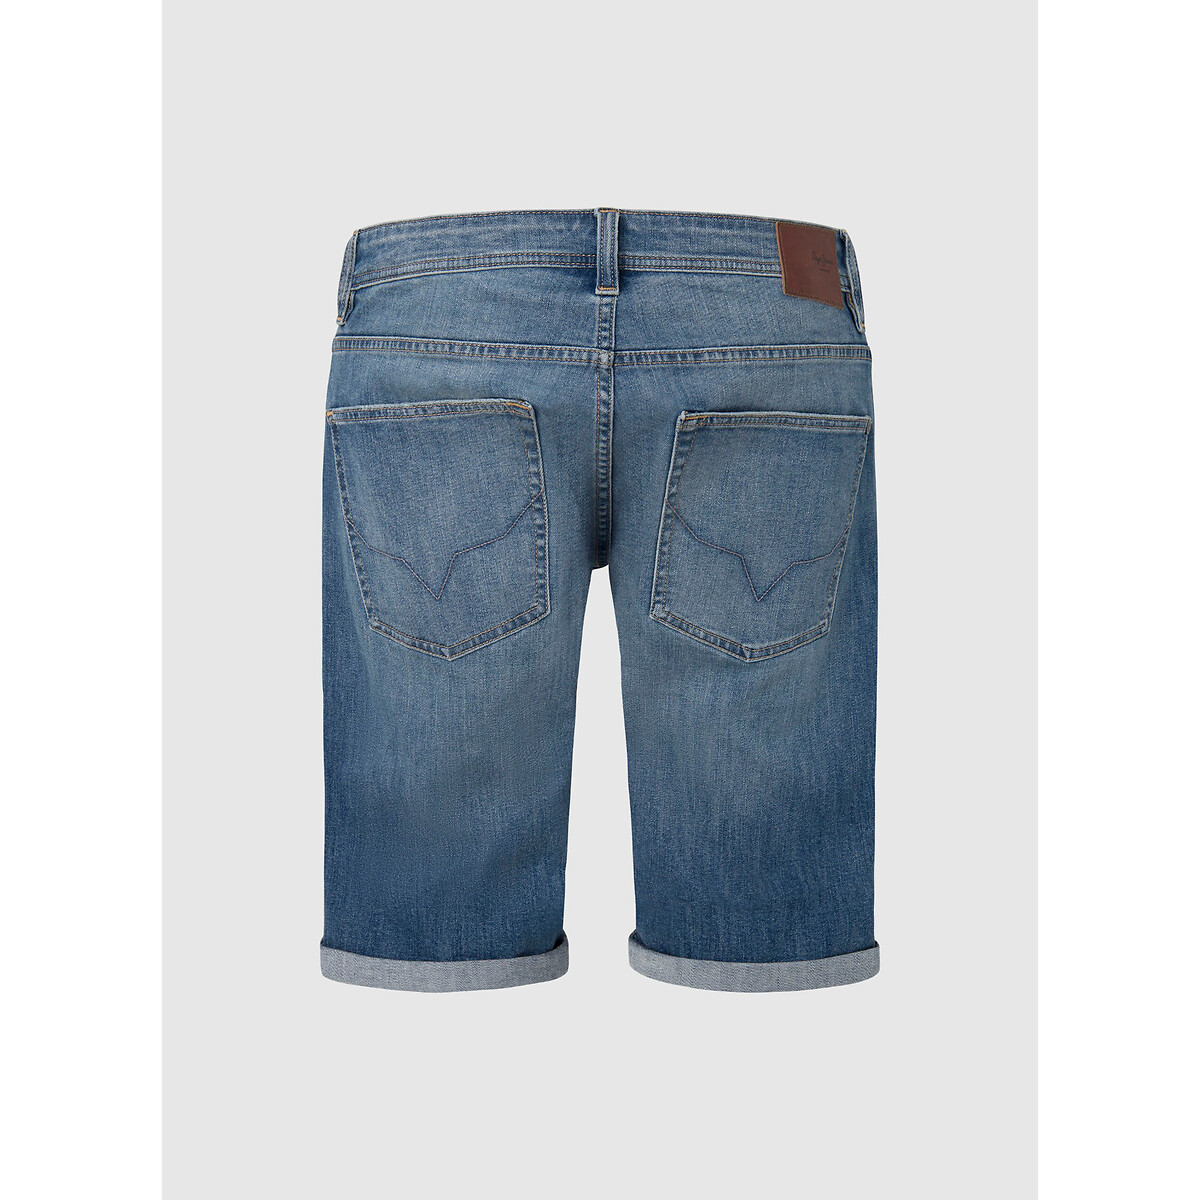 Шорты из джинсовой ткани прямого покроя  34 (US) синий LaRedoute, размер 34 (US) Шорты из джинсовой ткани прямого покроя  34 (US) синий - фото 2